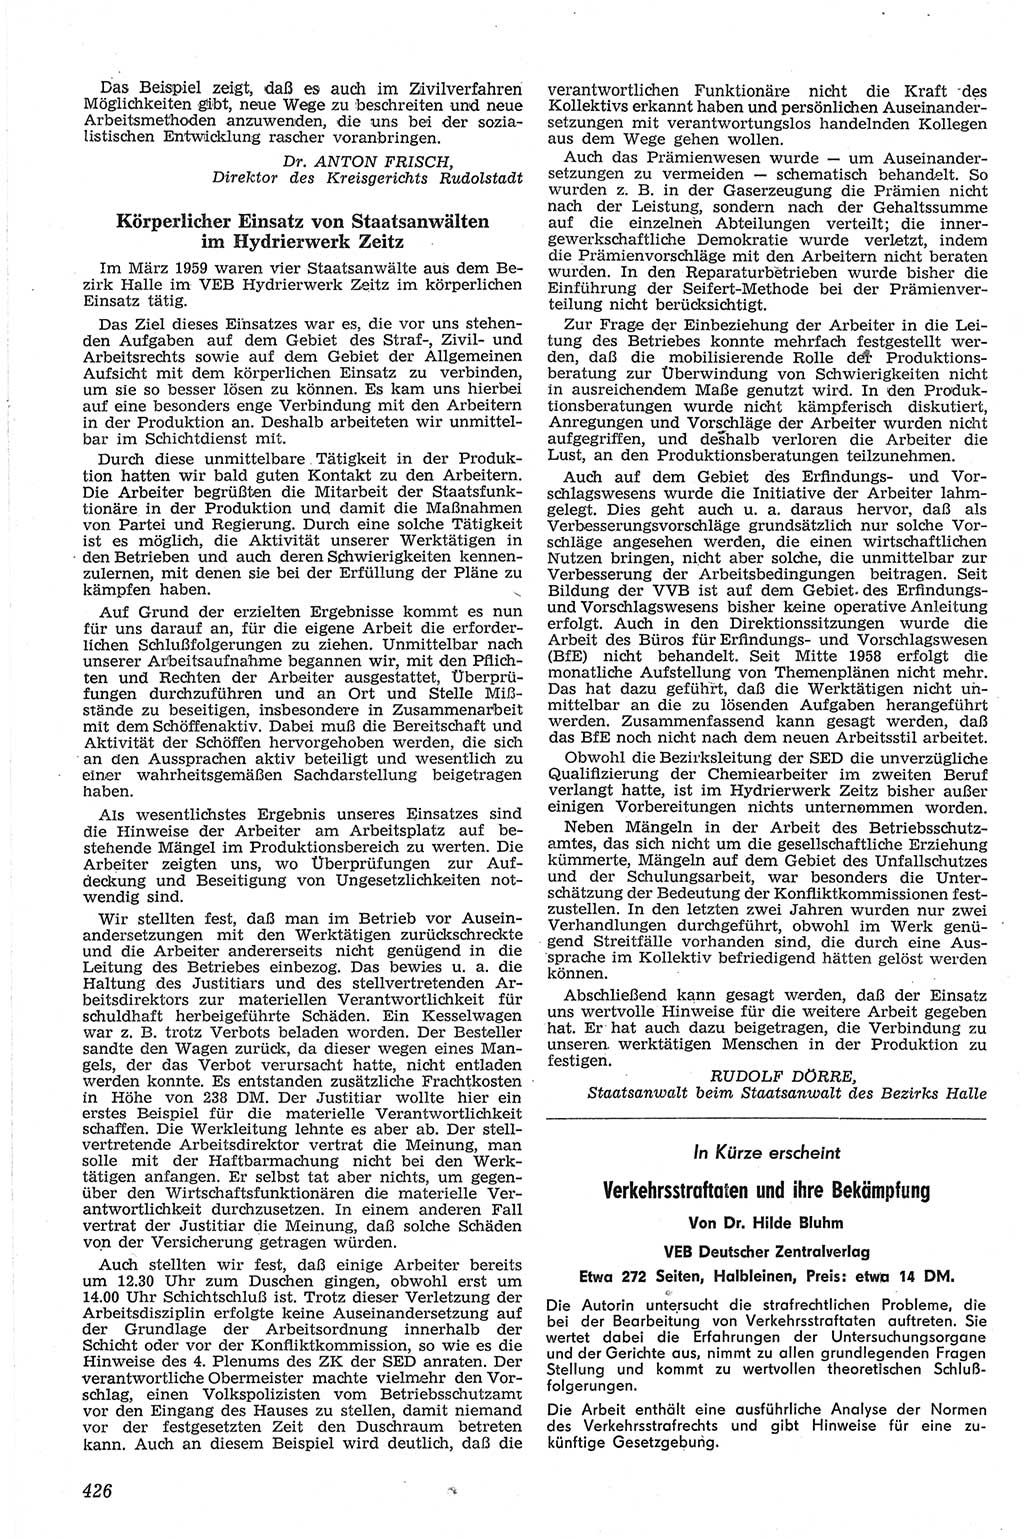 Neue Justiz (NJ), Zeitschrift für Recht und Rechtswissenschaft [Deutsche Demokratische Republik (DDR)], 13. Jahrgang 1959, Seite 426 (NJ DDR 1959, S. 426)